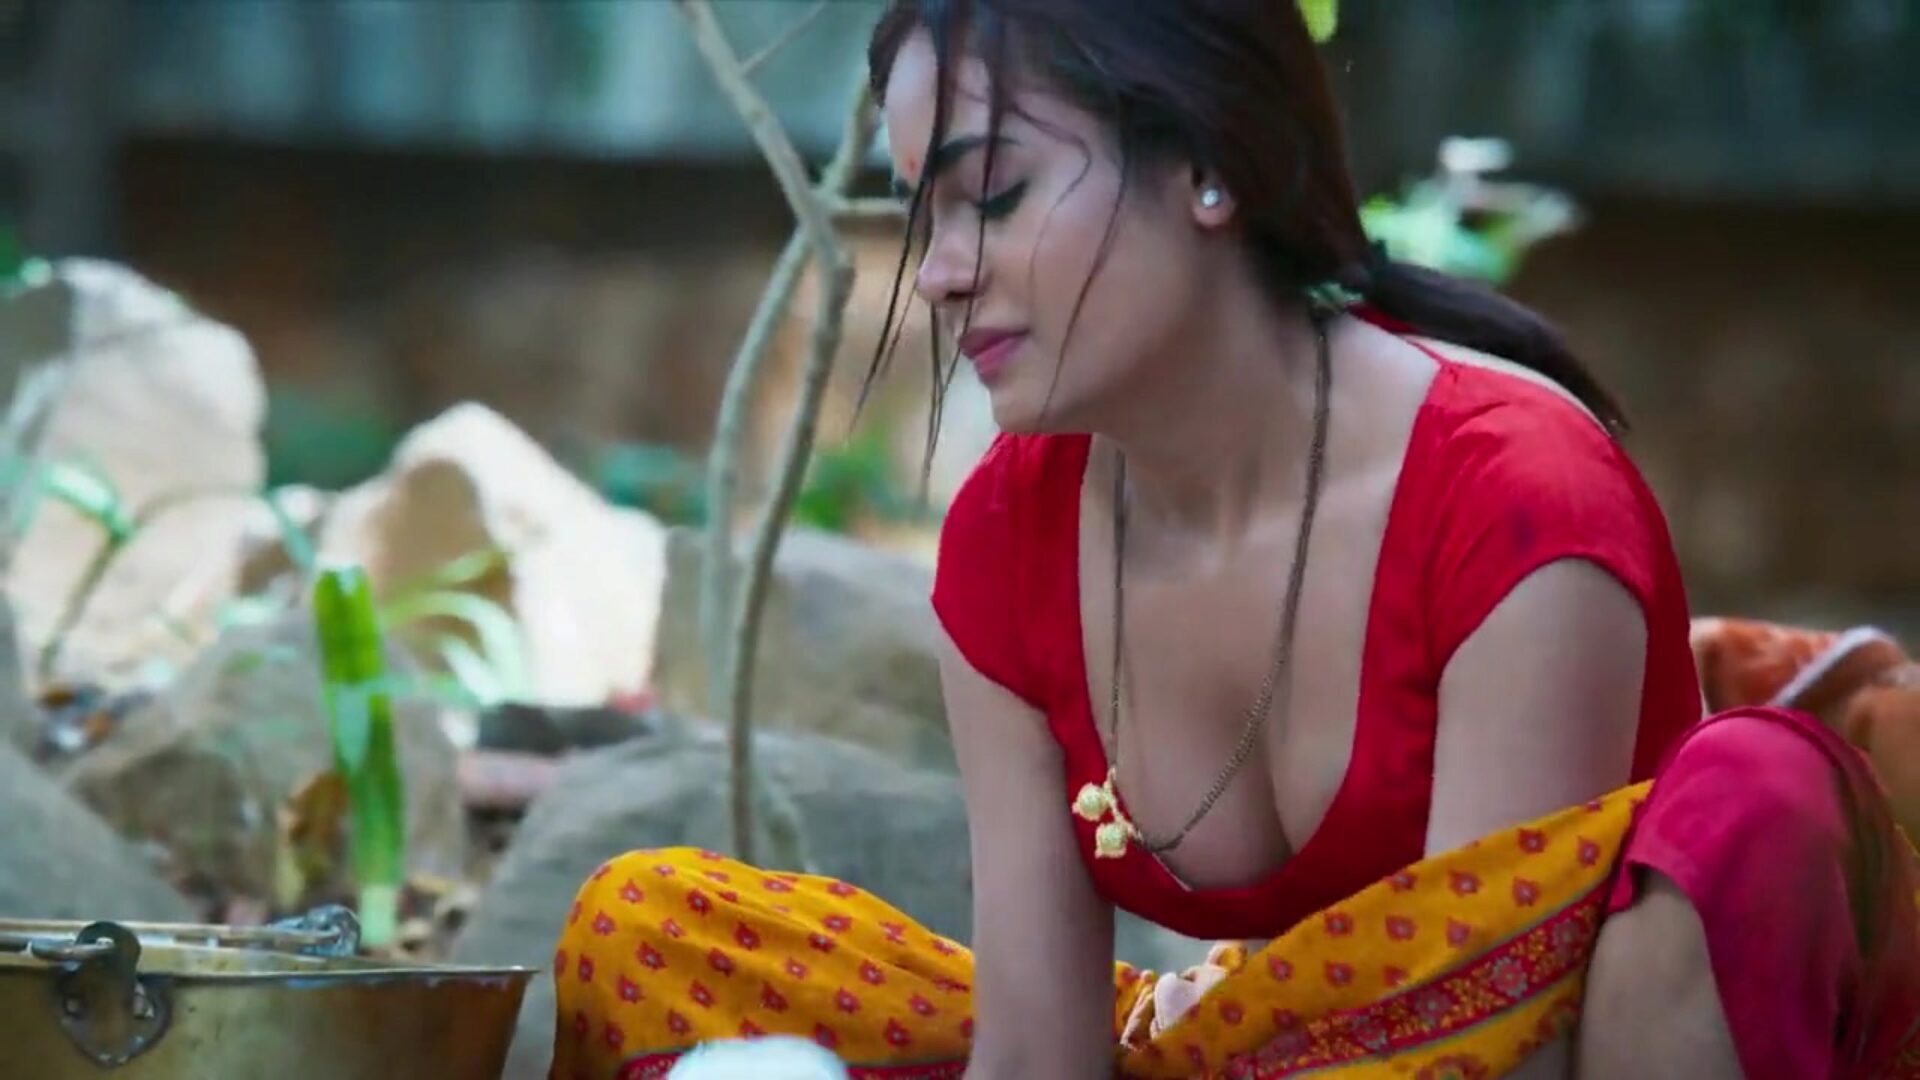 dhoban aur sarpanch élvezi az elégedett szenvedélyes szex indiai színésznő sikha sinha-t, ahogy sonu dhoban passioante har-out-ot csinál sarpanchannal. sikha felszarvazott férjével golu dhobi. sikha sinha különböző orgia pozíciókban dörömbölt sonu dhoban ka joban mastram